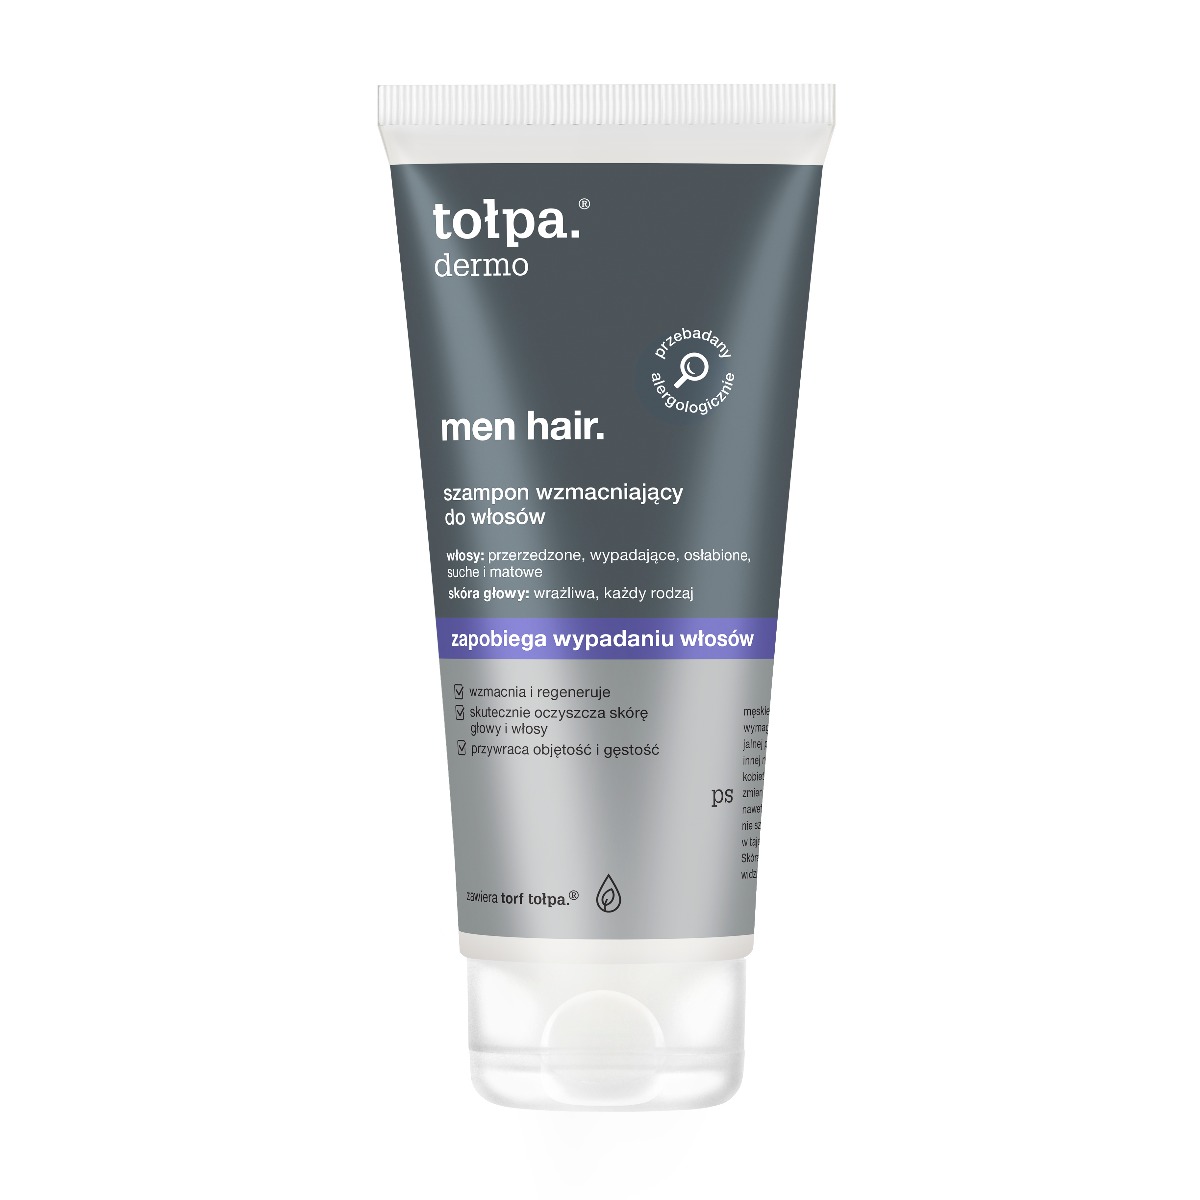 tolpa dermo men hair wzmacniajacy szampon przeciw wypadaniu 200ml 002